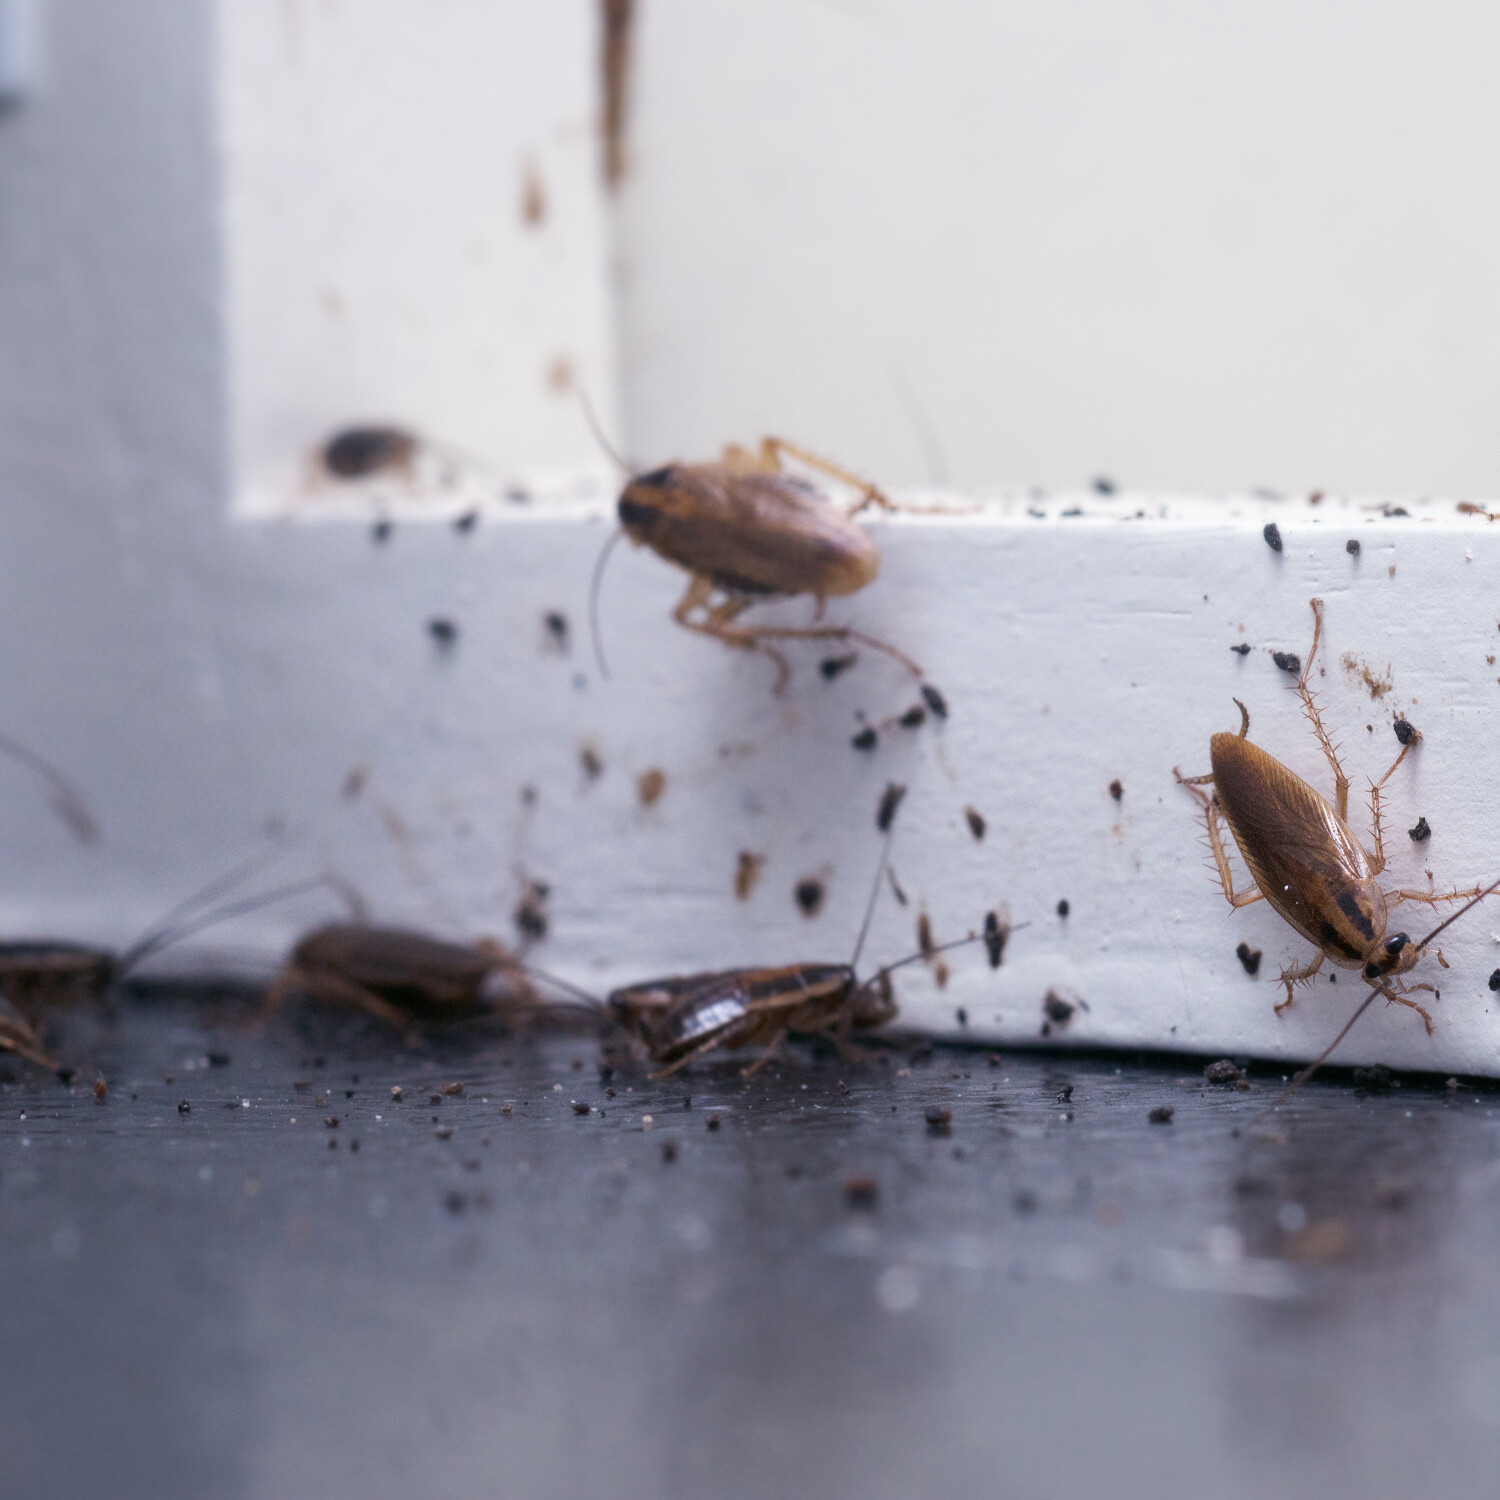 Kakkerlakken in huis - kakkerlakken bestrijden